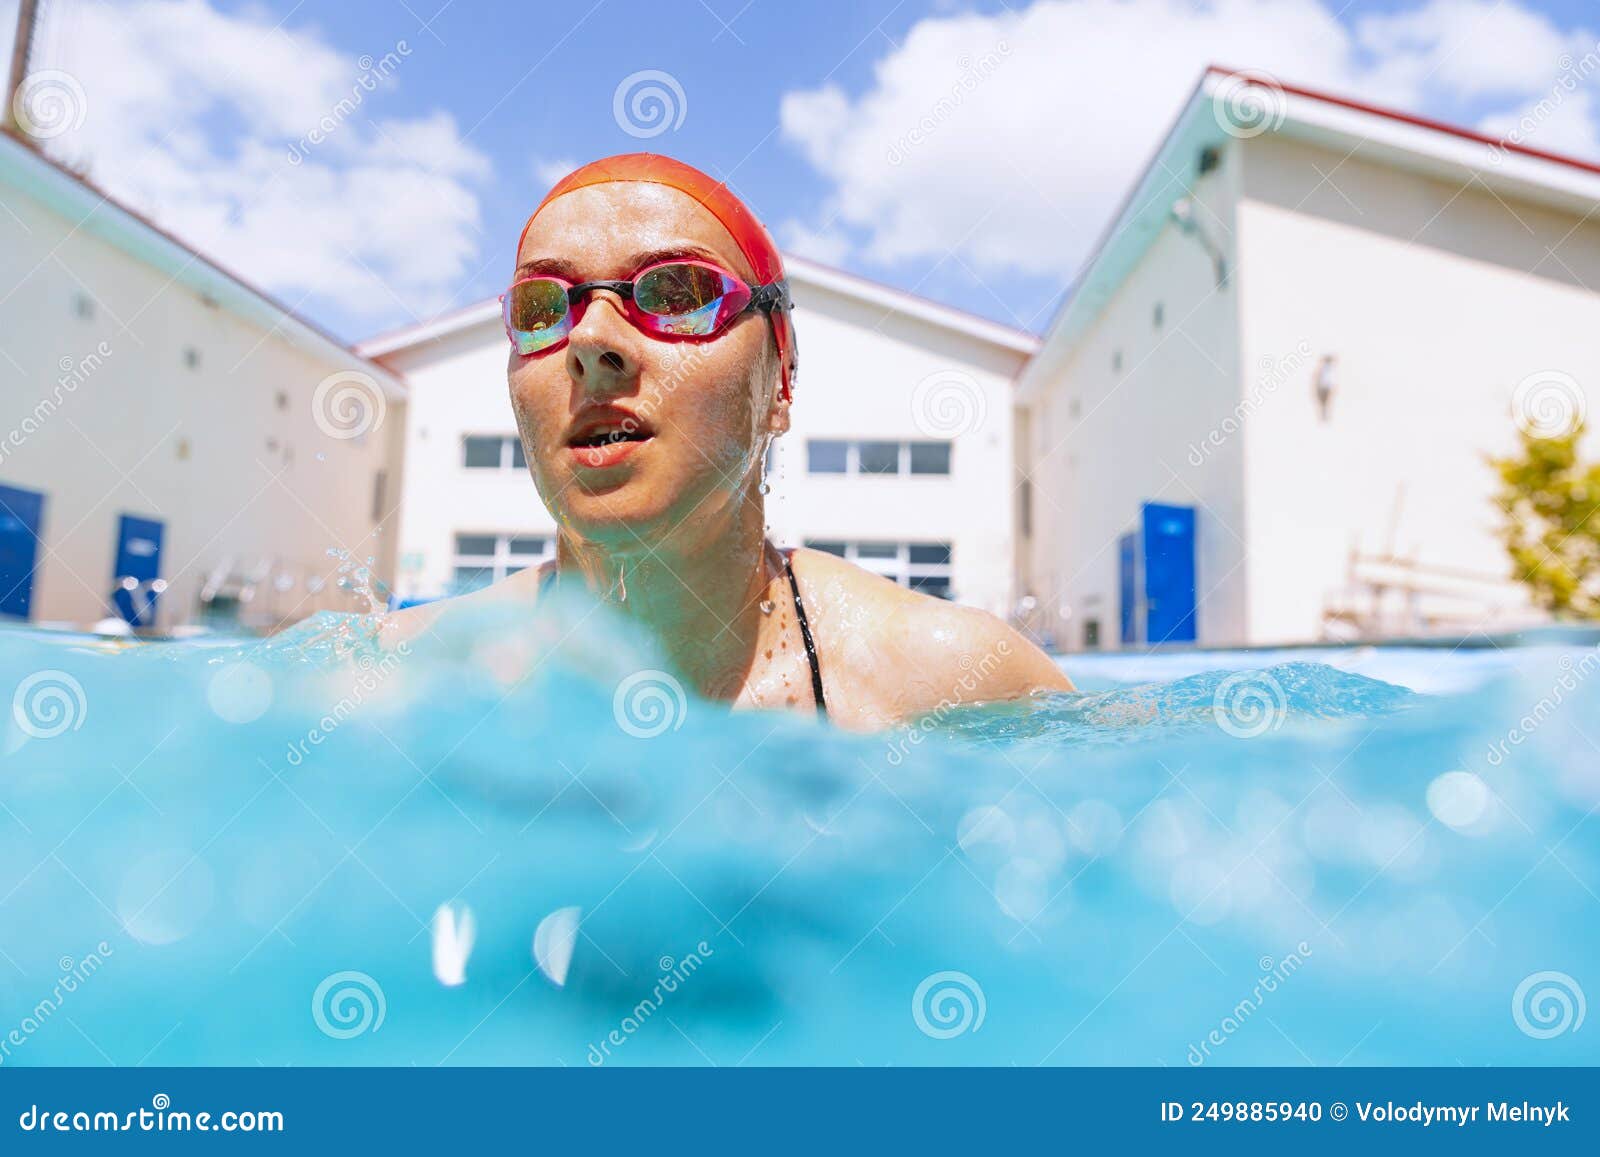 Piscinas, nadador, gorro de baño, gafas de natación, agua, saltar